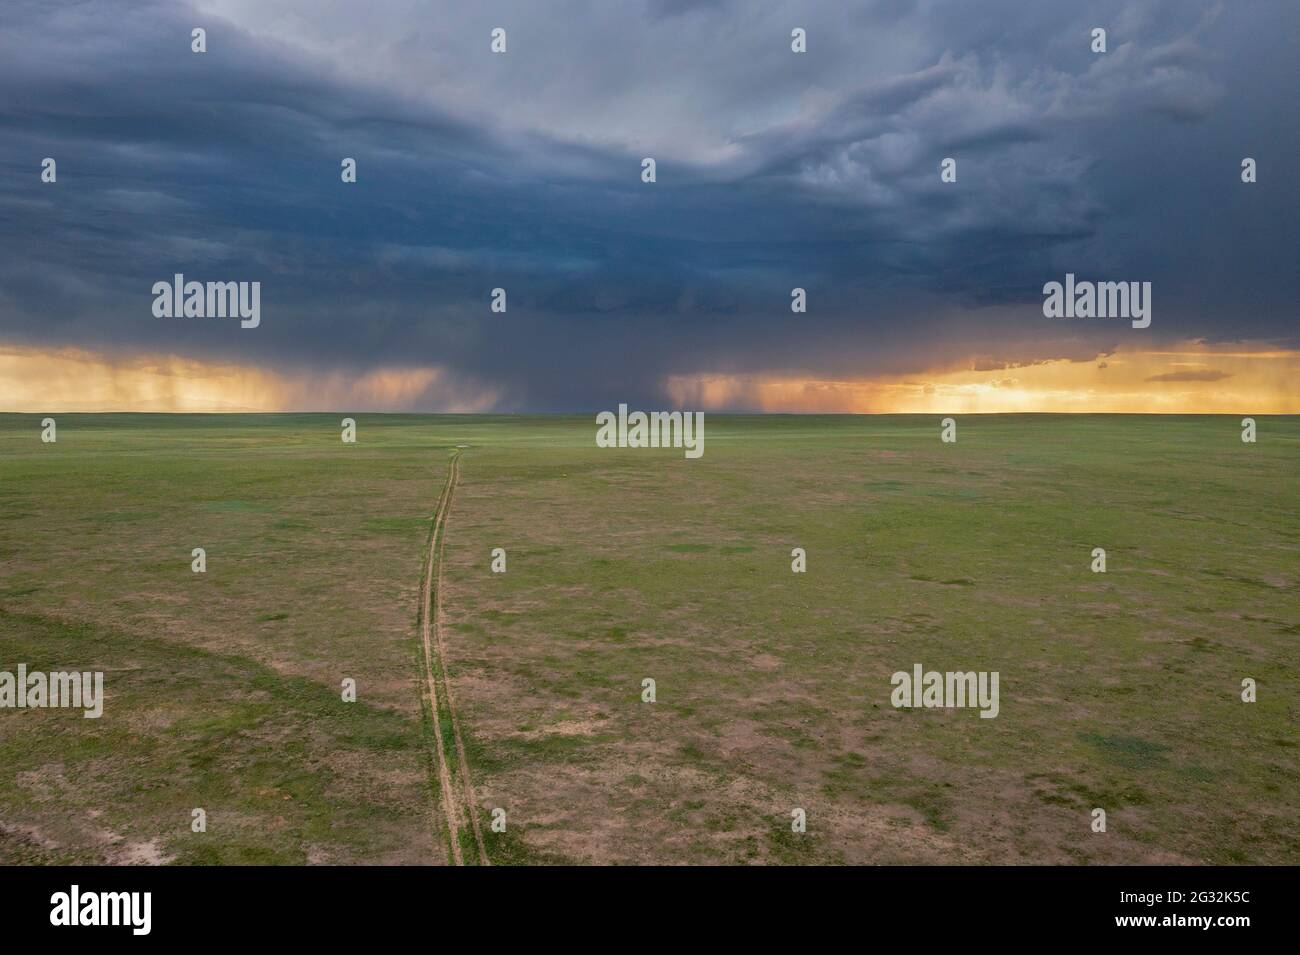 Starke Sturmwolke über grüner Prärie und entfernten Rocky Mountains - Pawnee National Grassland in Colorado, Luftaufnahme des späten Frühlings oder des Frühsommers Stockfoto